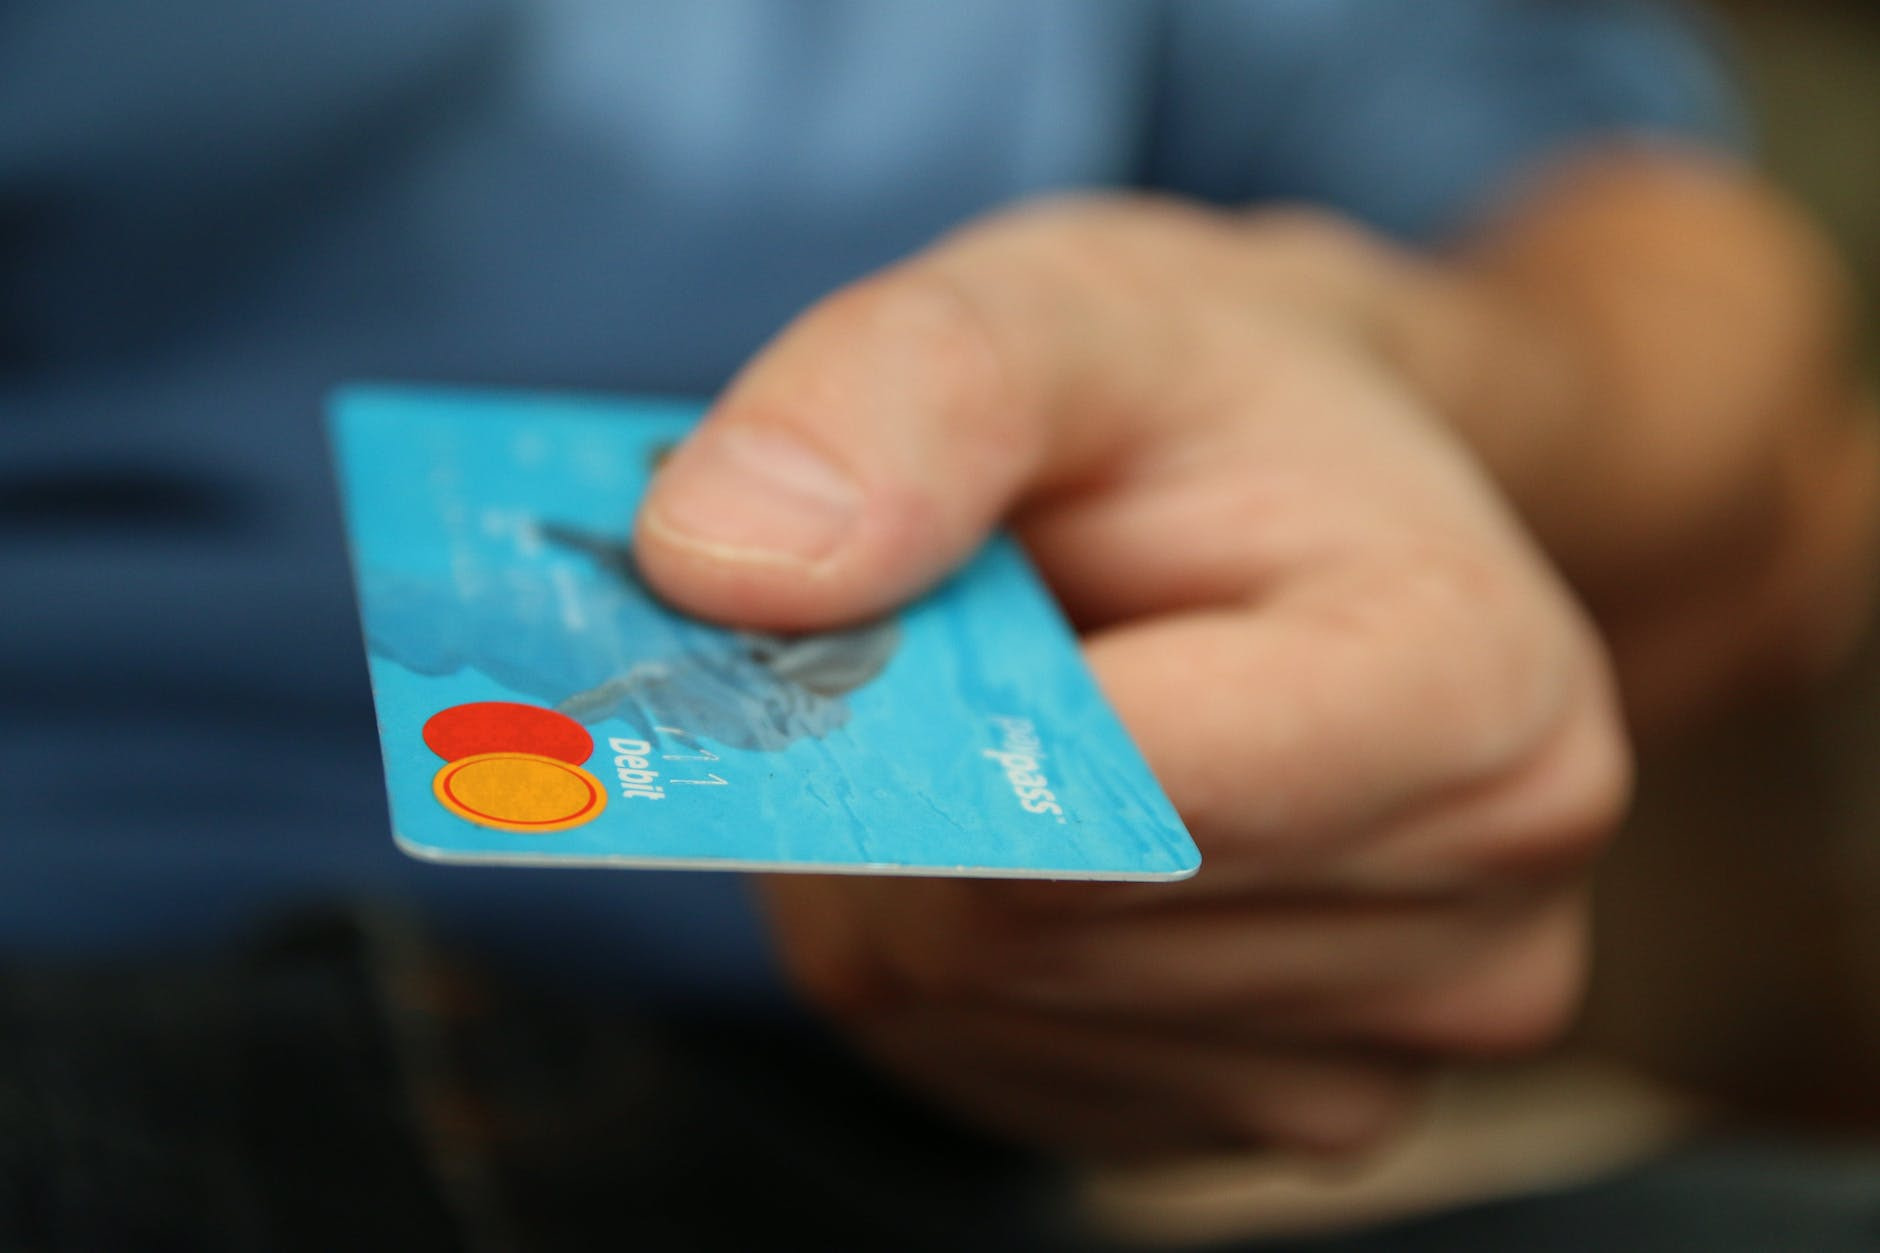 e-commerce in Nigeria person holding debit card